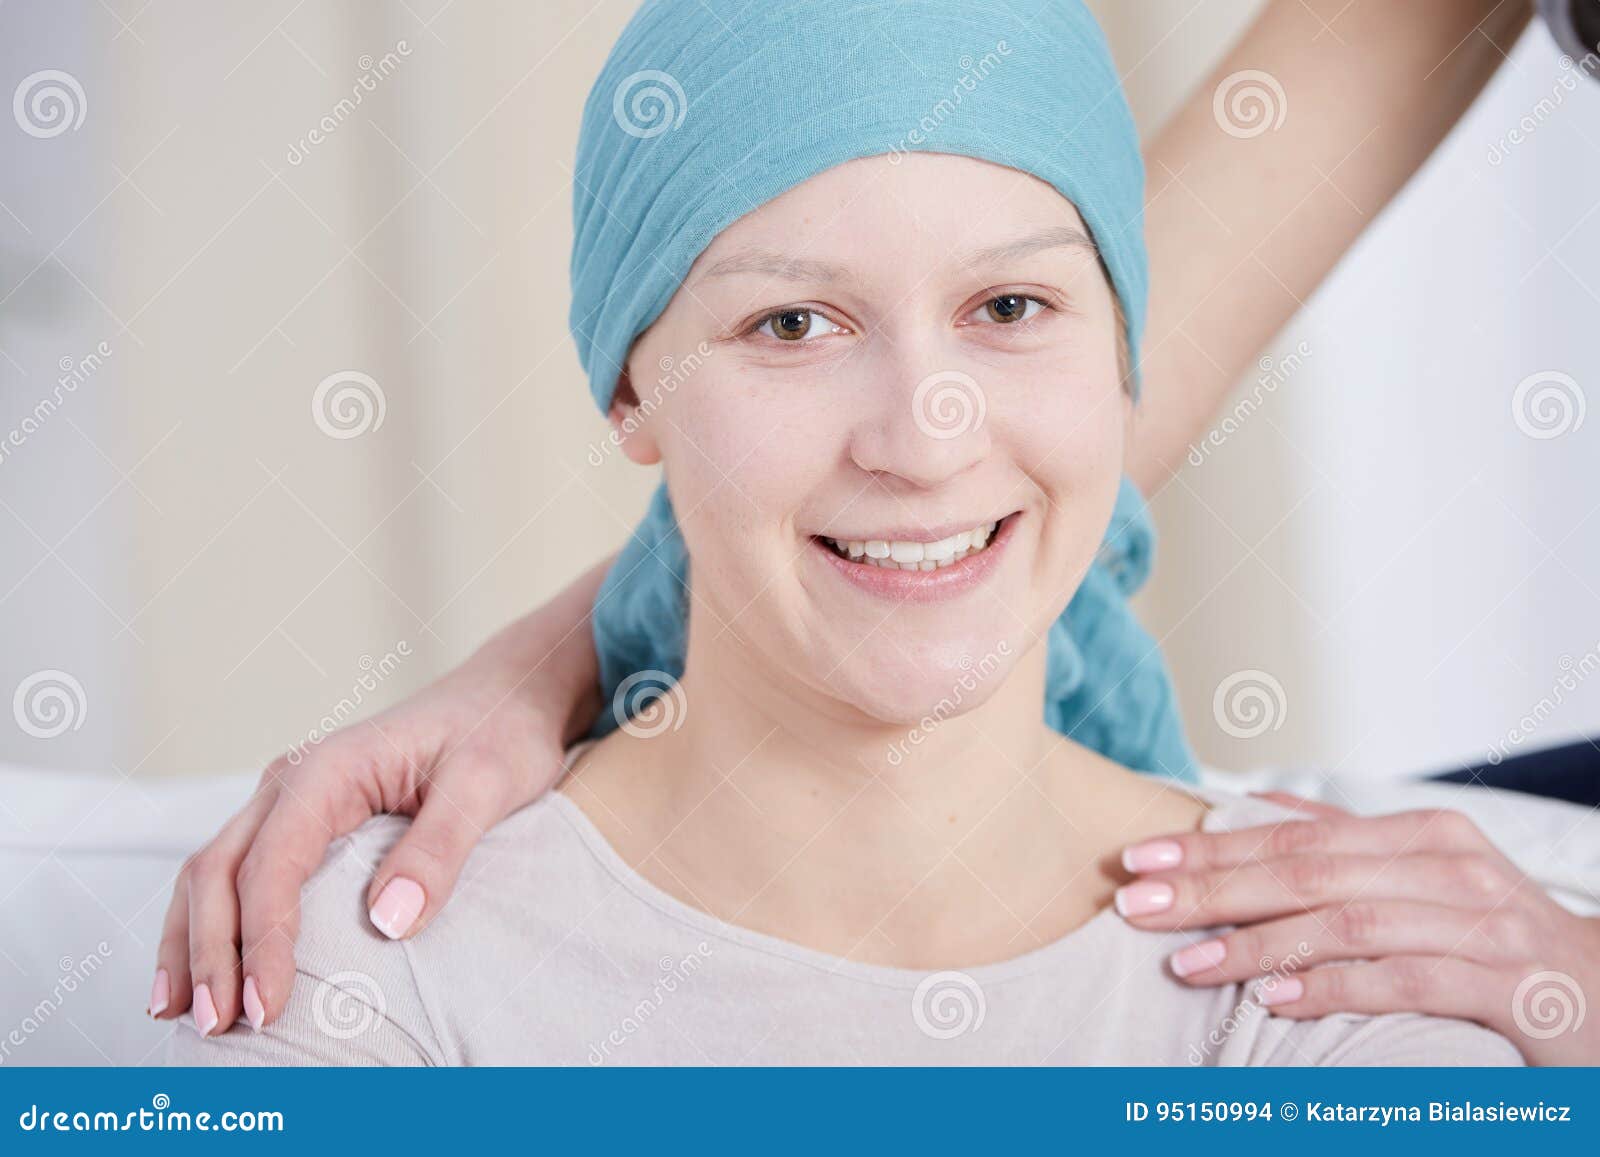 癌症图片大全-癌症高清图片下载-觅知网